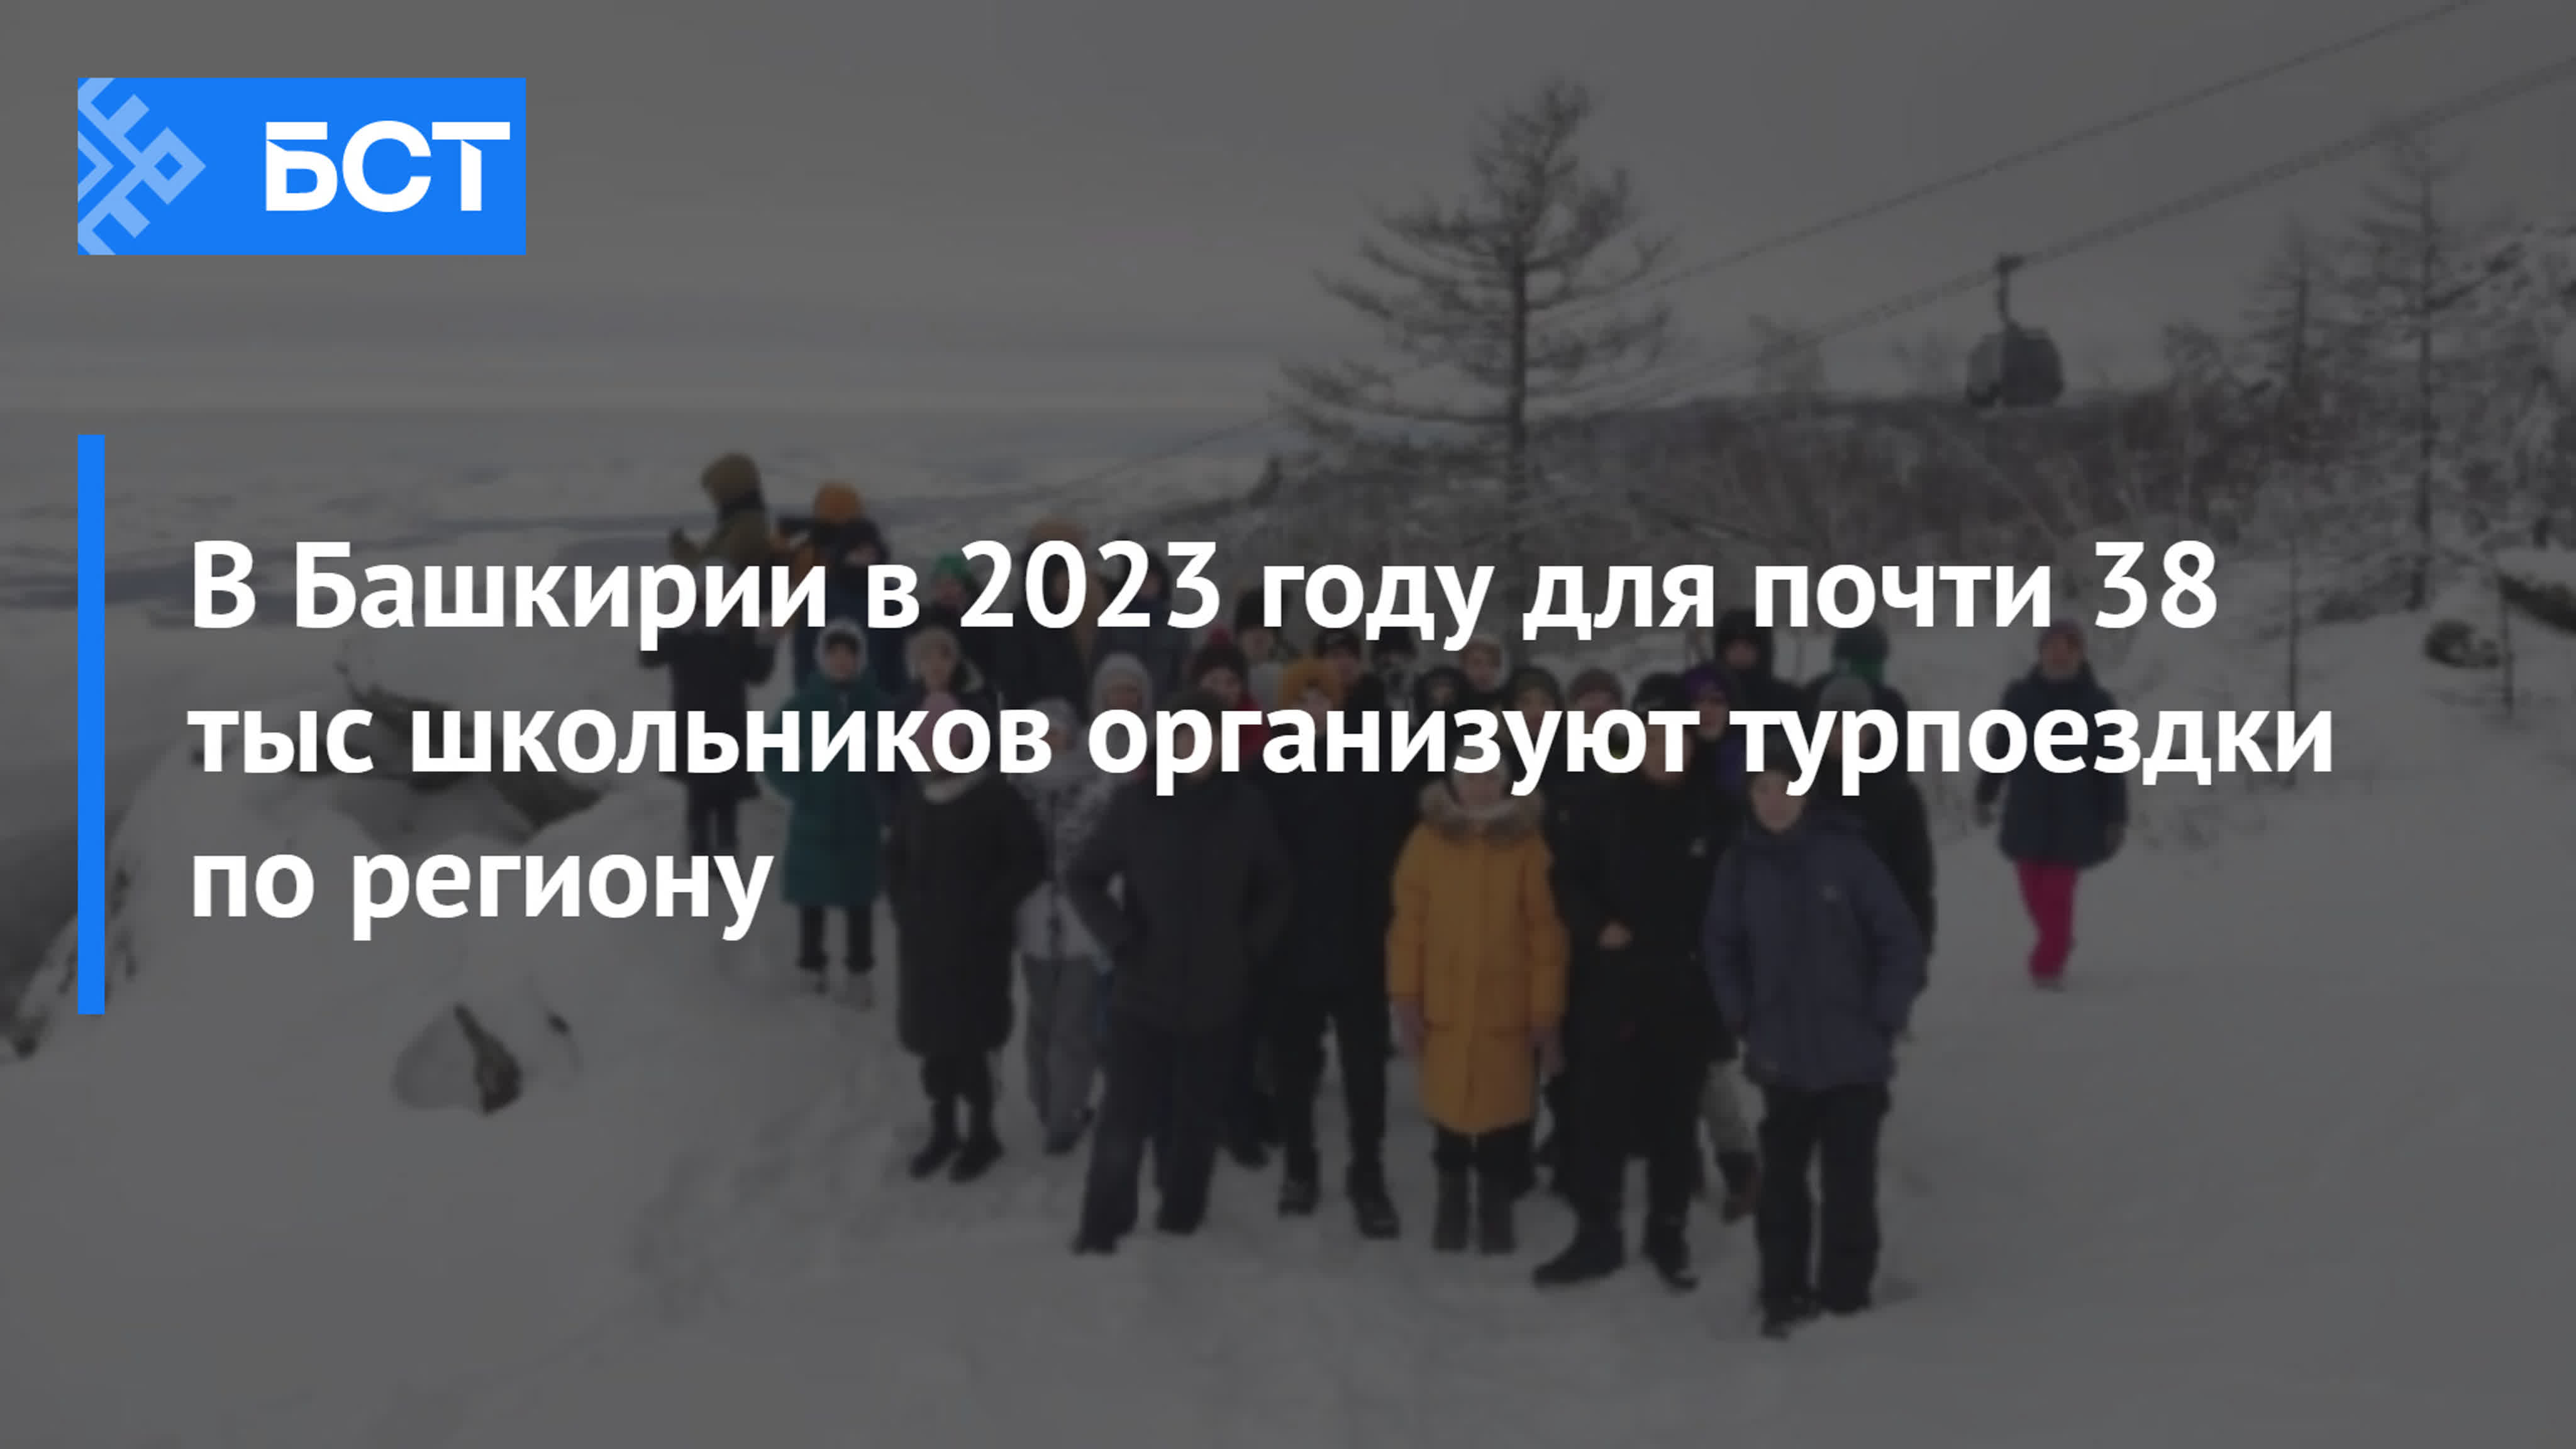 Год добрых дел в Башкирии 2023. Лето в Башкортостане 2023.